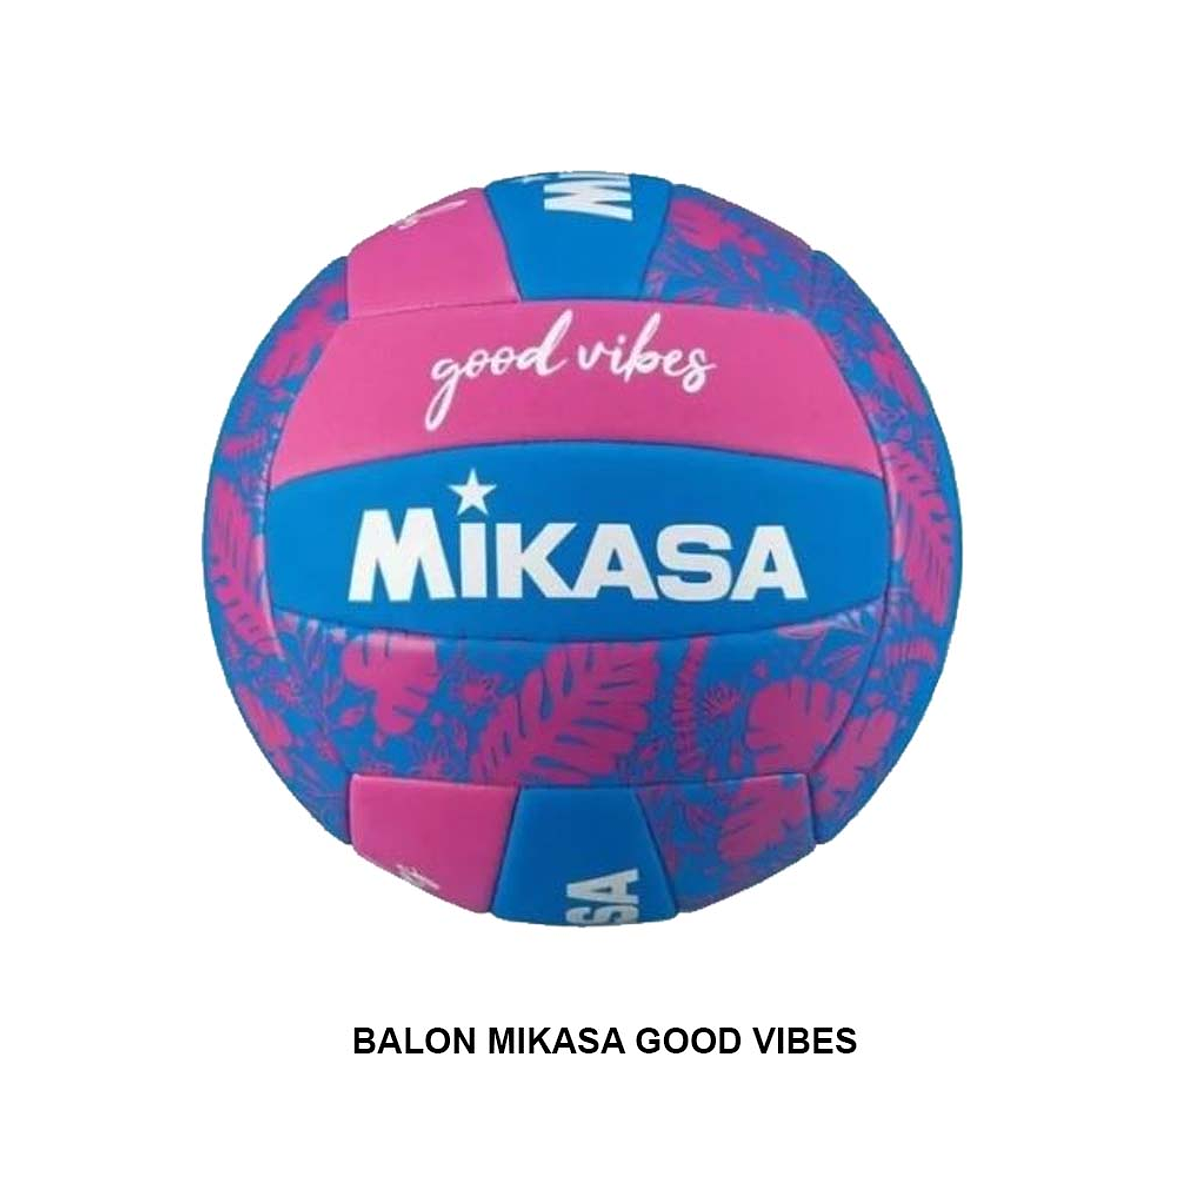 Balon de voleibol Mikasa - Good Vibes